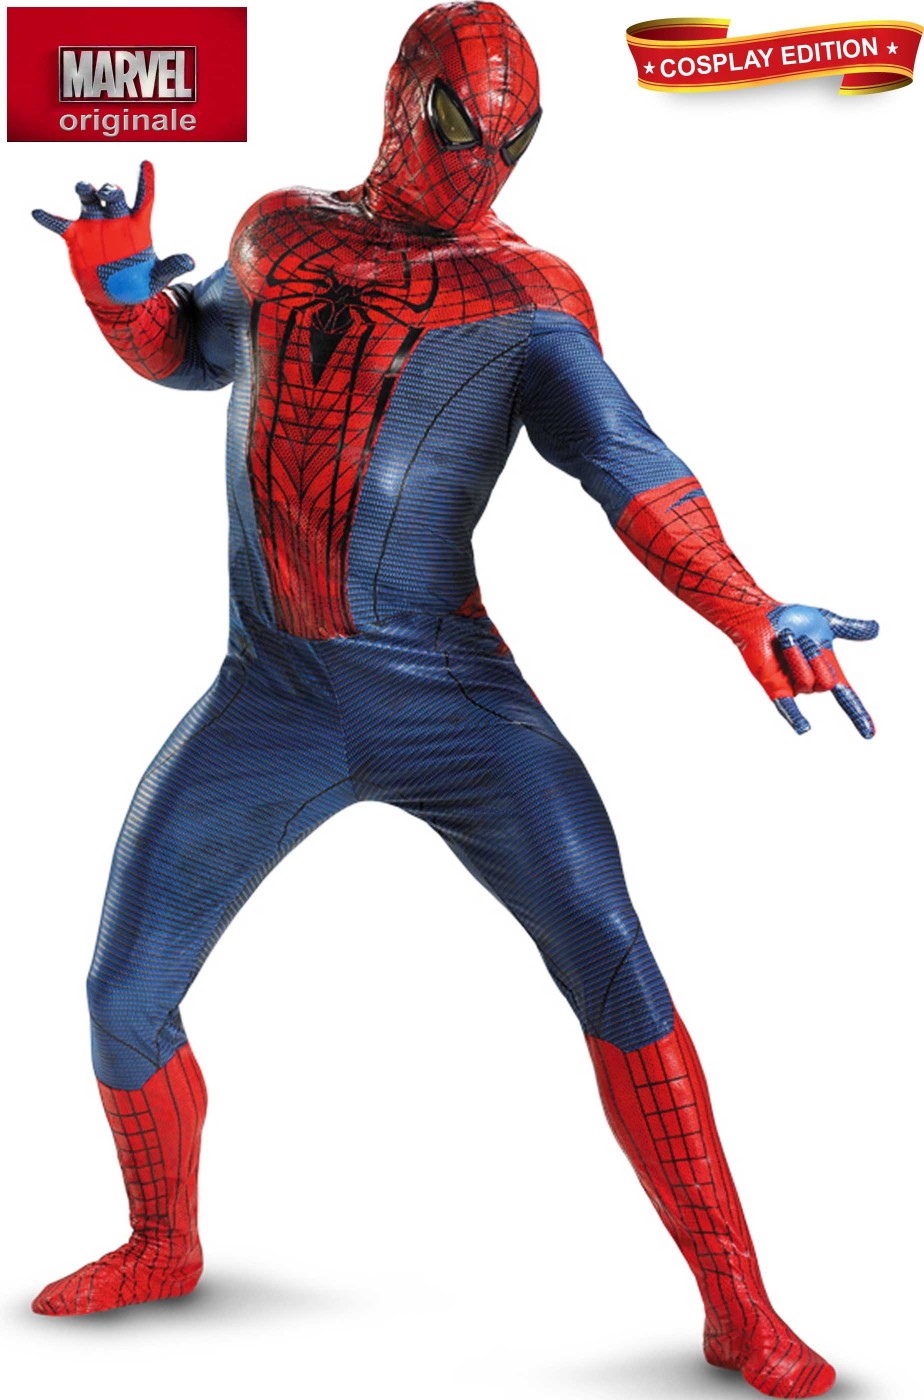 Costume Spiderman replica come quello del film. In Spandex adulto